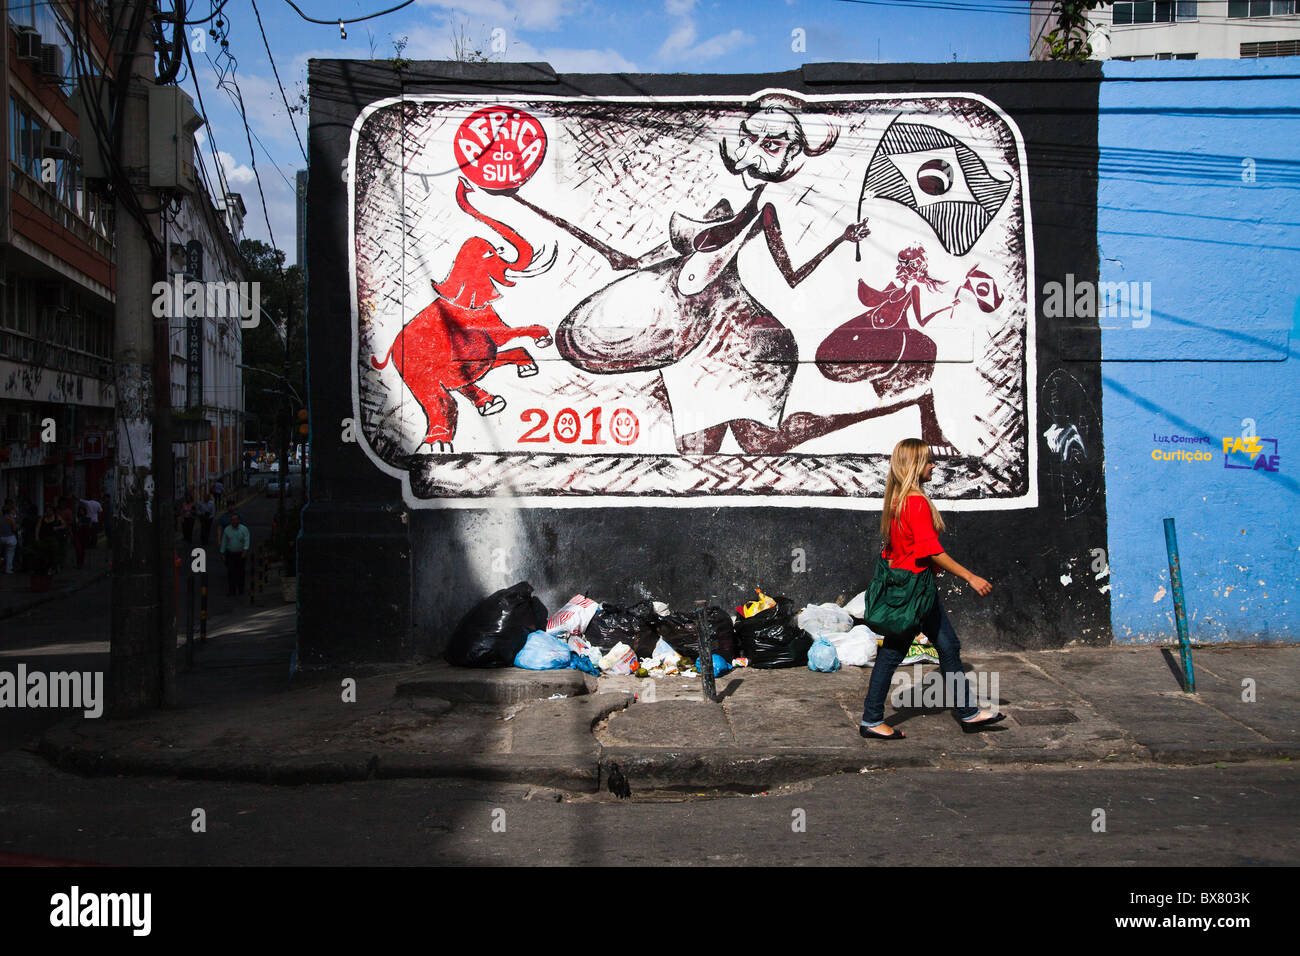 Eine bunte Wandgemälde von Jorge Selarón in der Lapa Bezirk von Rio De Janeiro 2010 brasilianische Welt Cup Team zu unterstützen Stockfoto